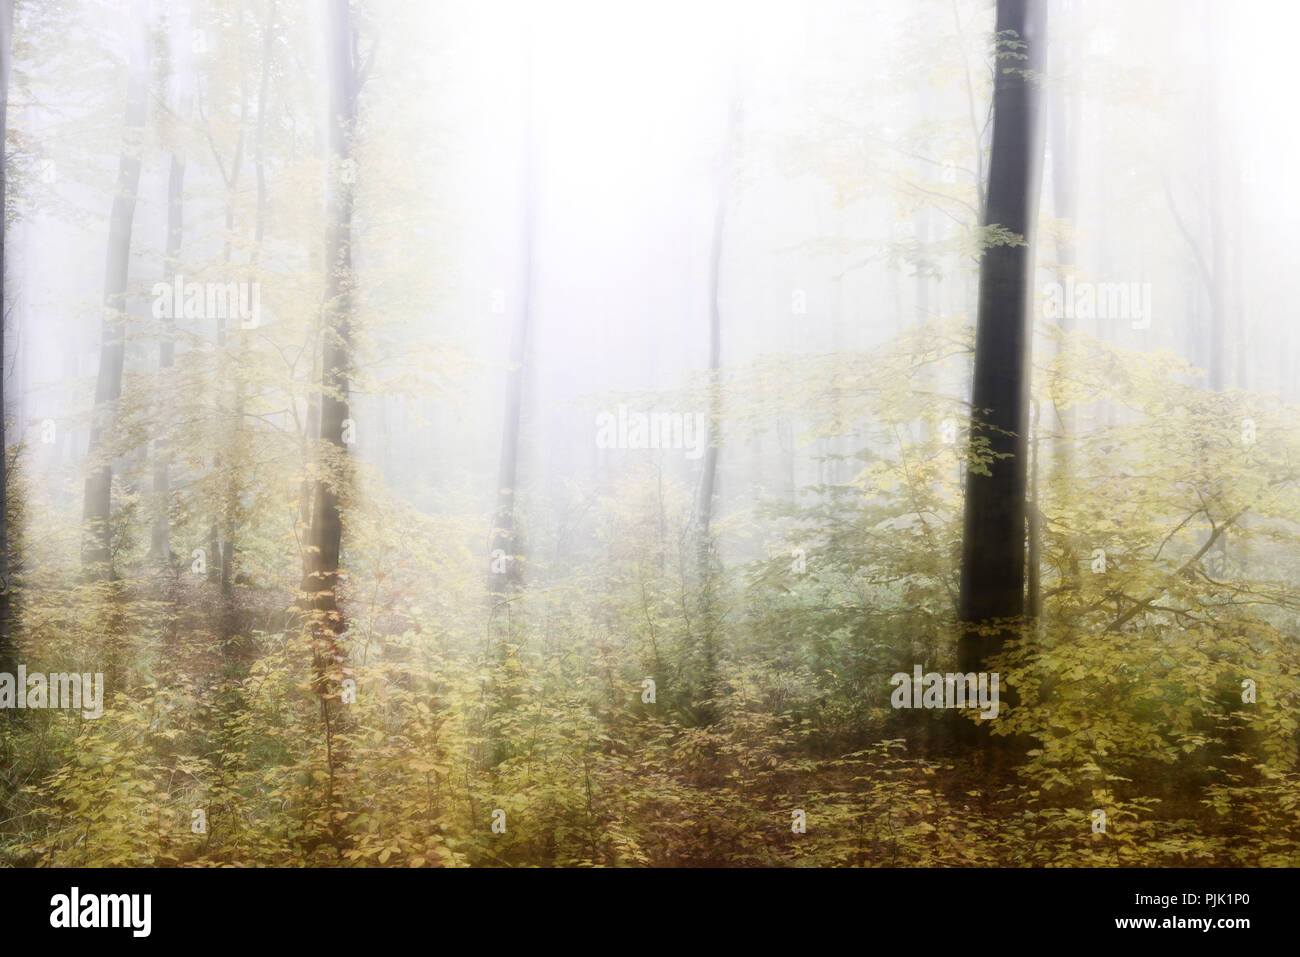 Forêt de brouillard en automne, résumé étude, lors du tournage de manipulations, de couleur et de contraste, du grain de film numérique visible Banque D'Images